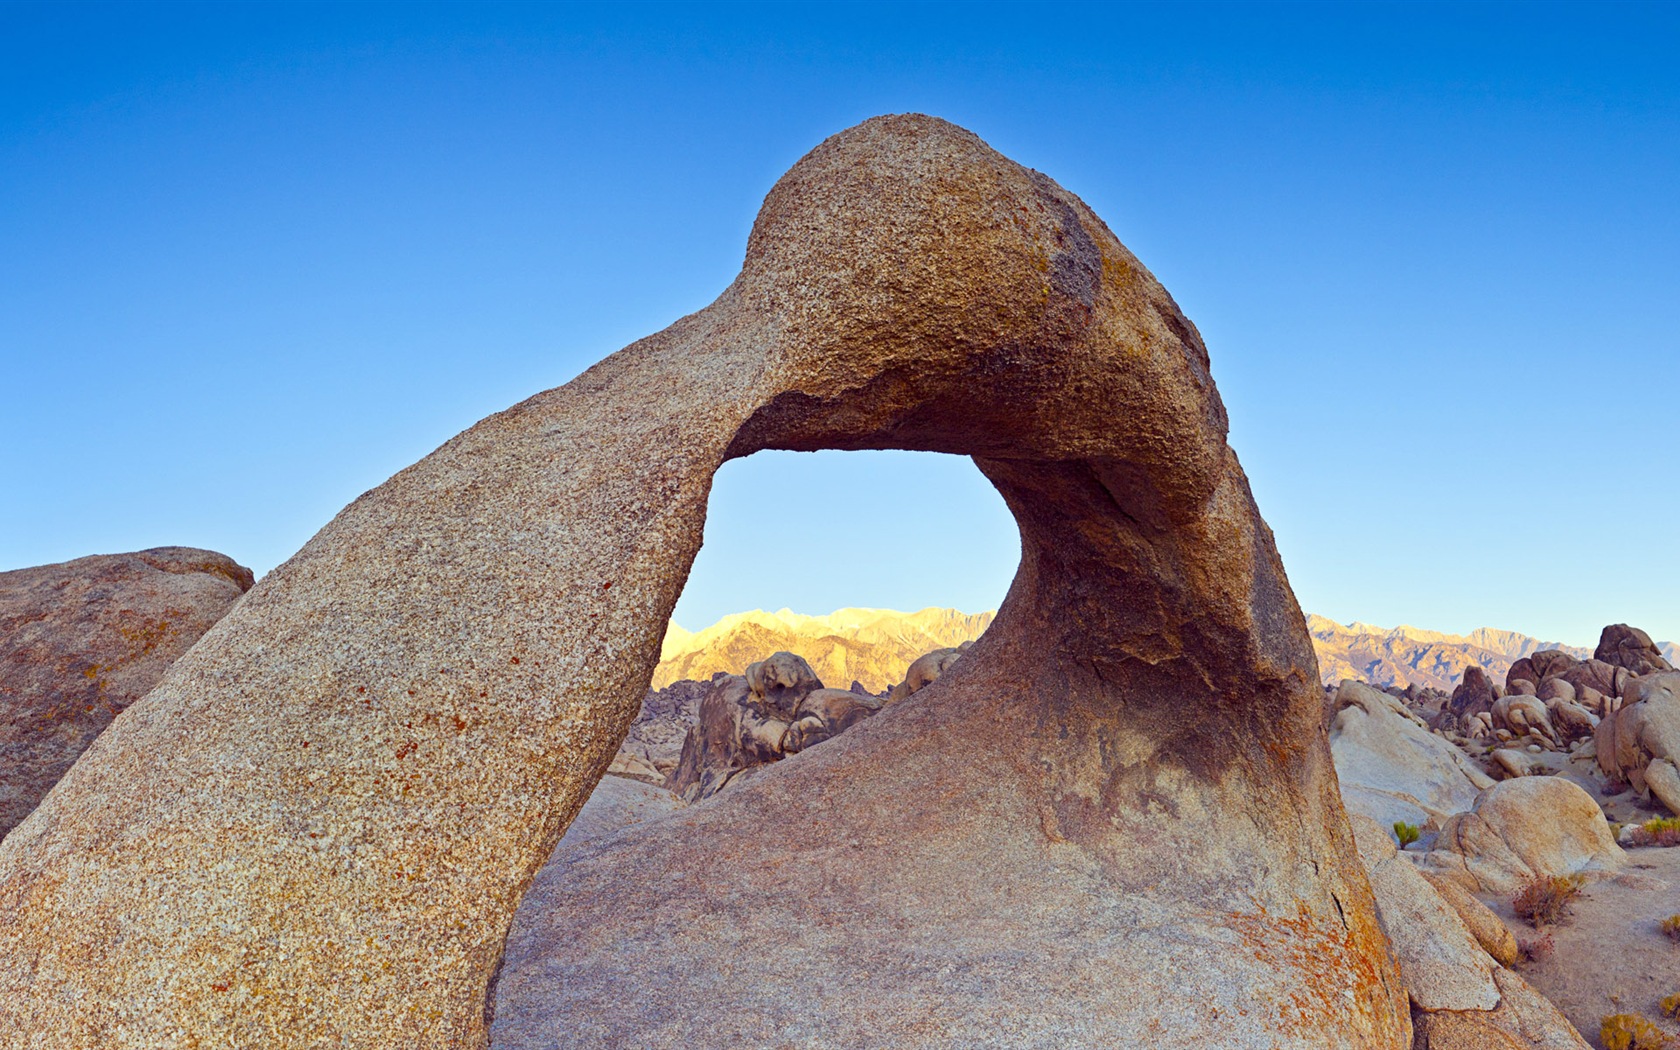 Les déserts chauds et arides, de Windows 8 fonds d'écran widescreen panoramique #5 - 1680x1050